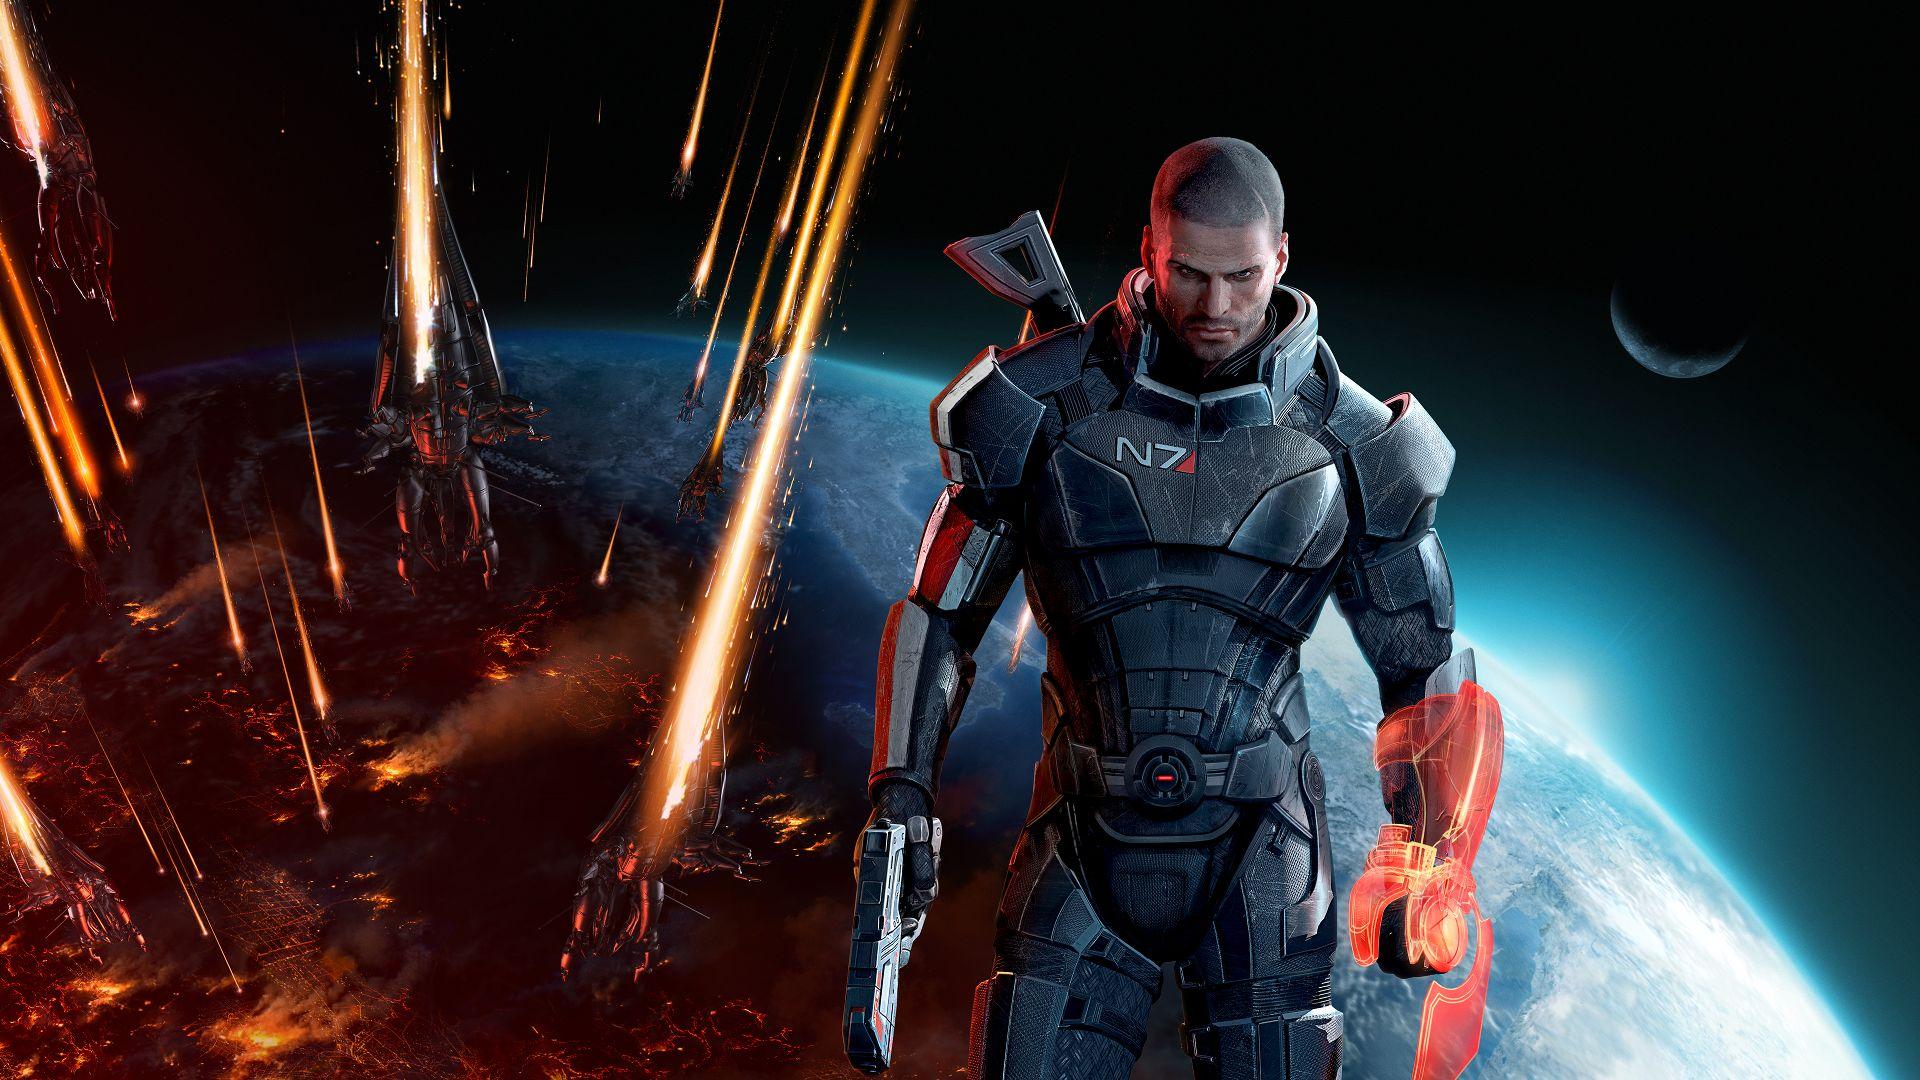 Senin ruh dünyanı yansıtan oyun: Mass Effect serisi